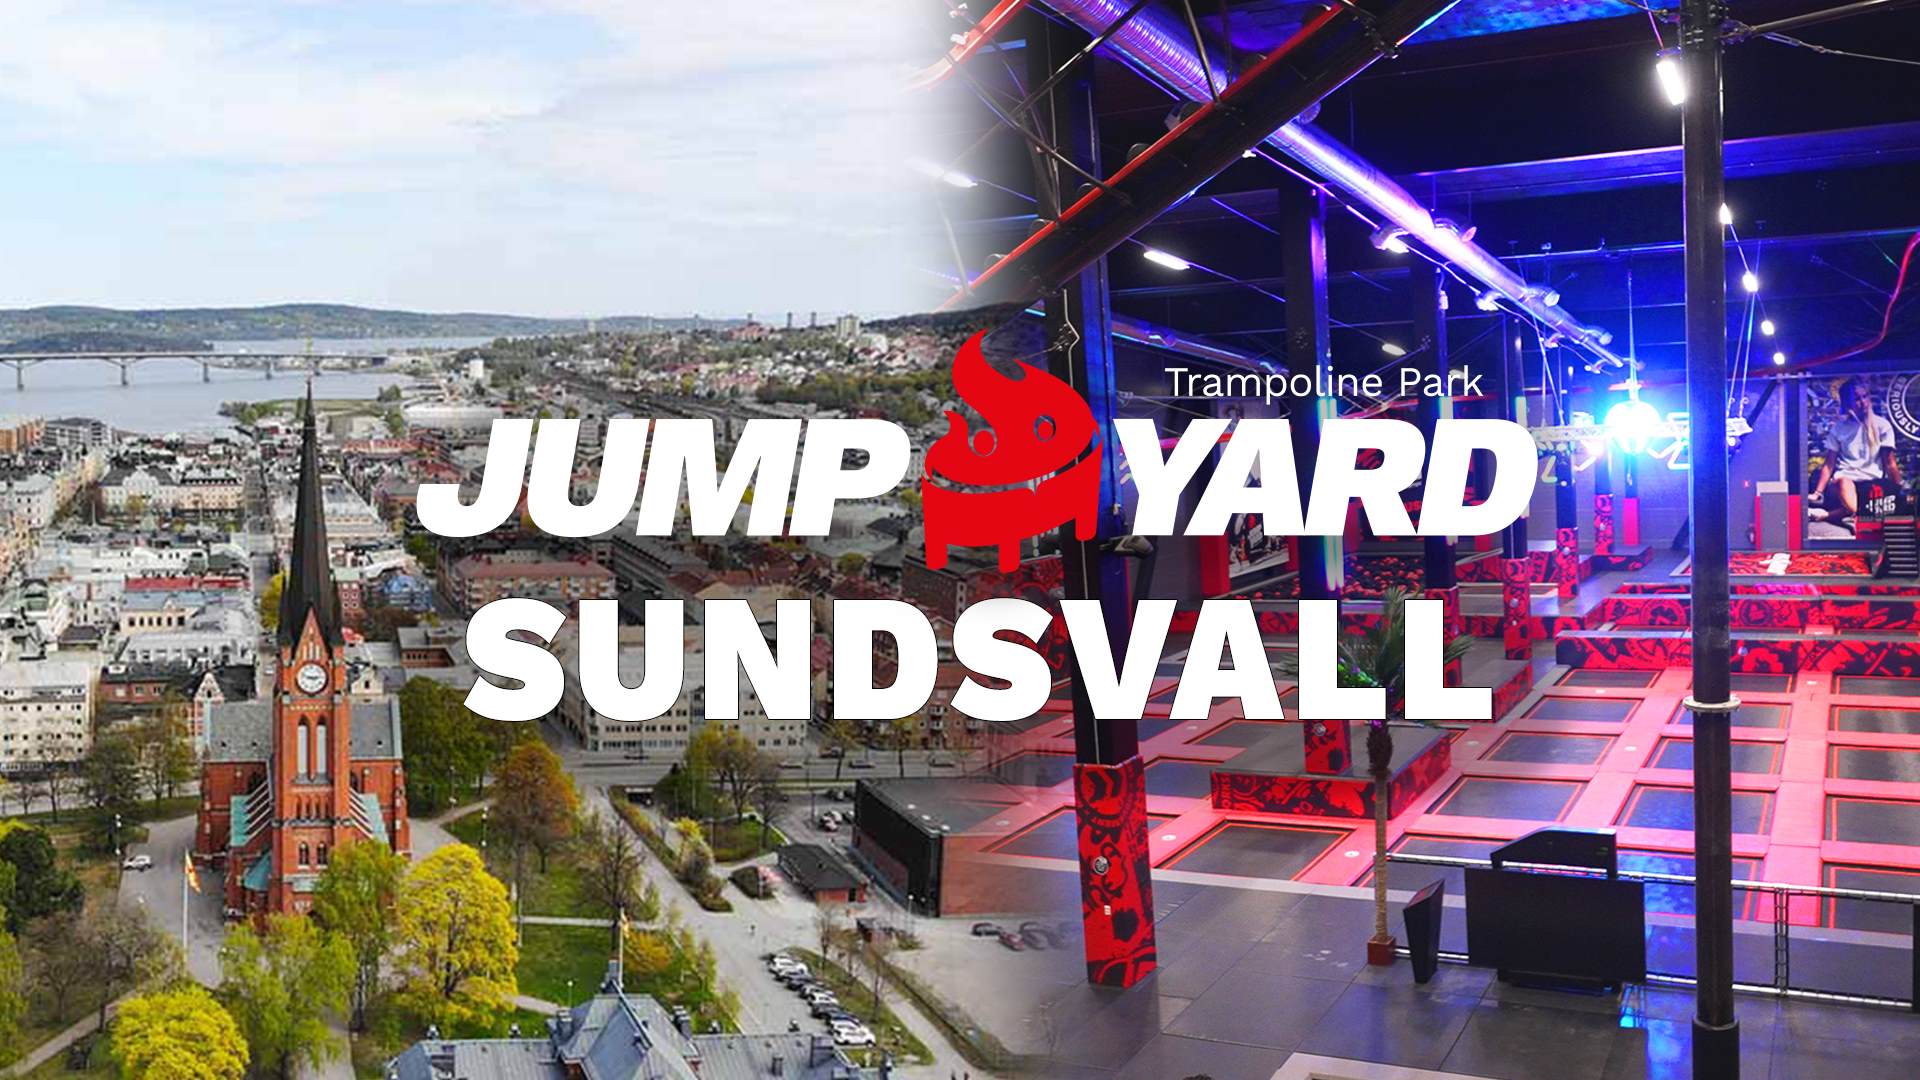 JumpYard Sundsvall tour av trampolinpark på YouTube